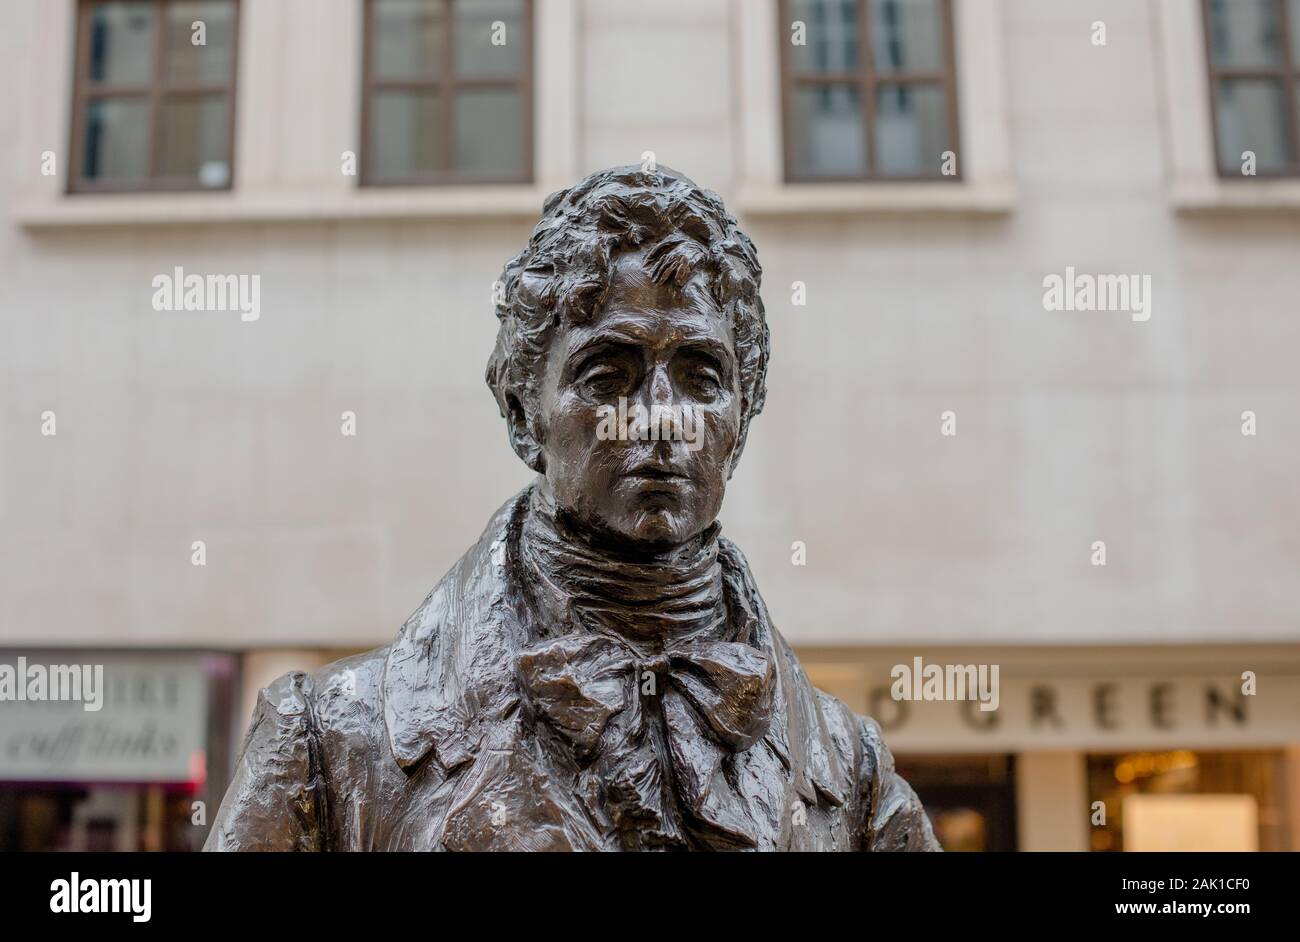 Statue of Beau Brummell by Irena Sedlecká in Jermyn St, St James, London Stock Photo